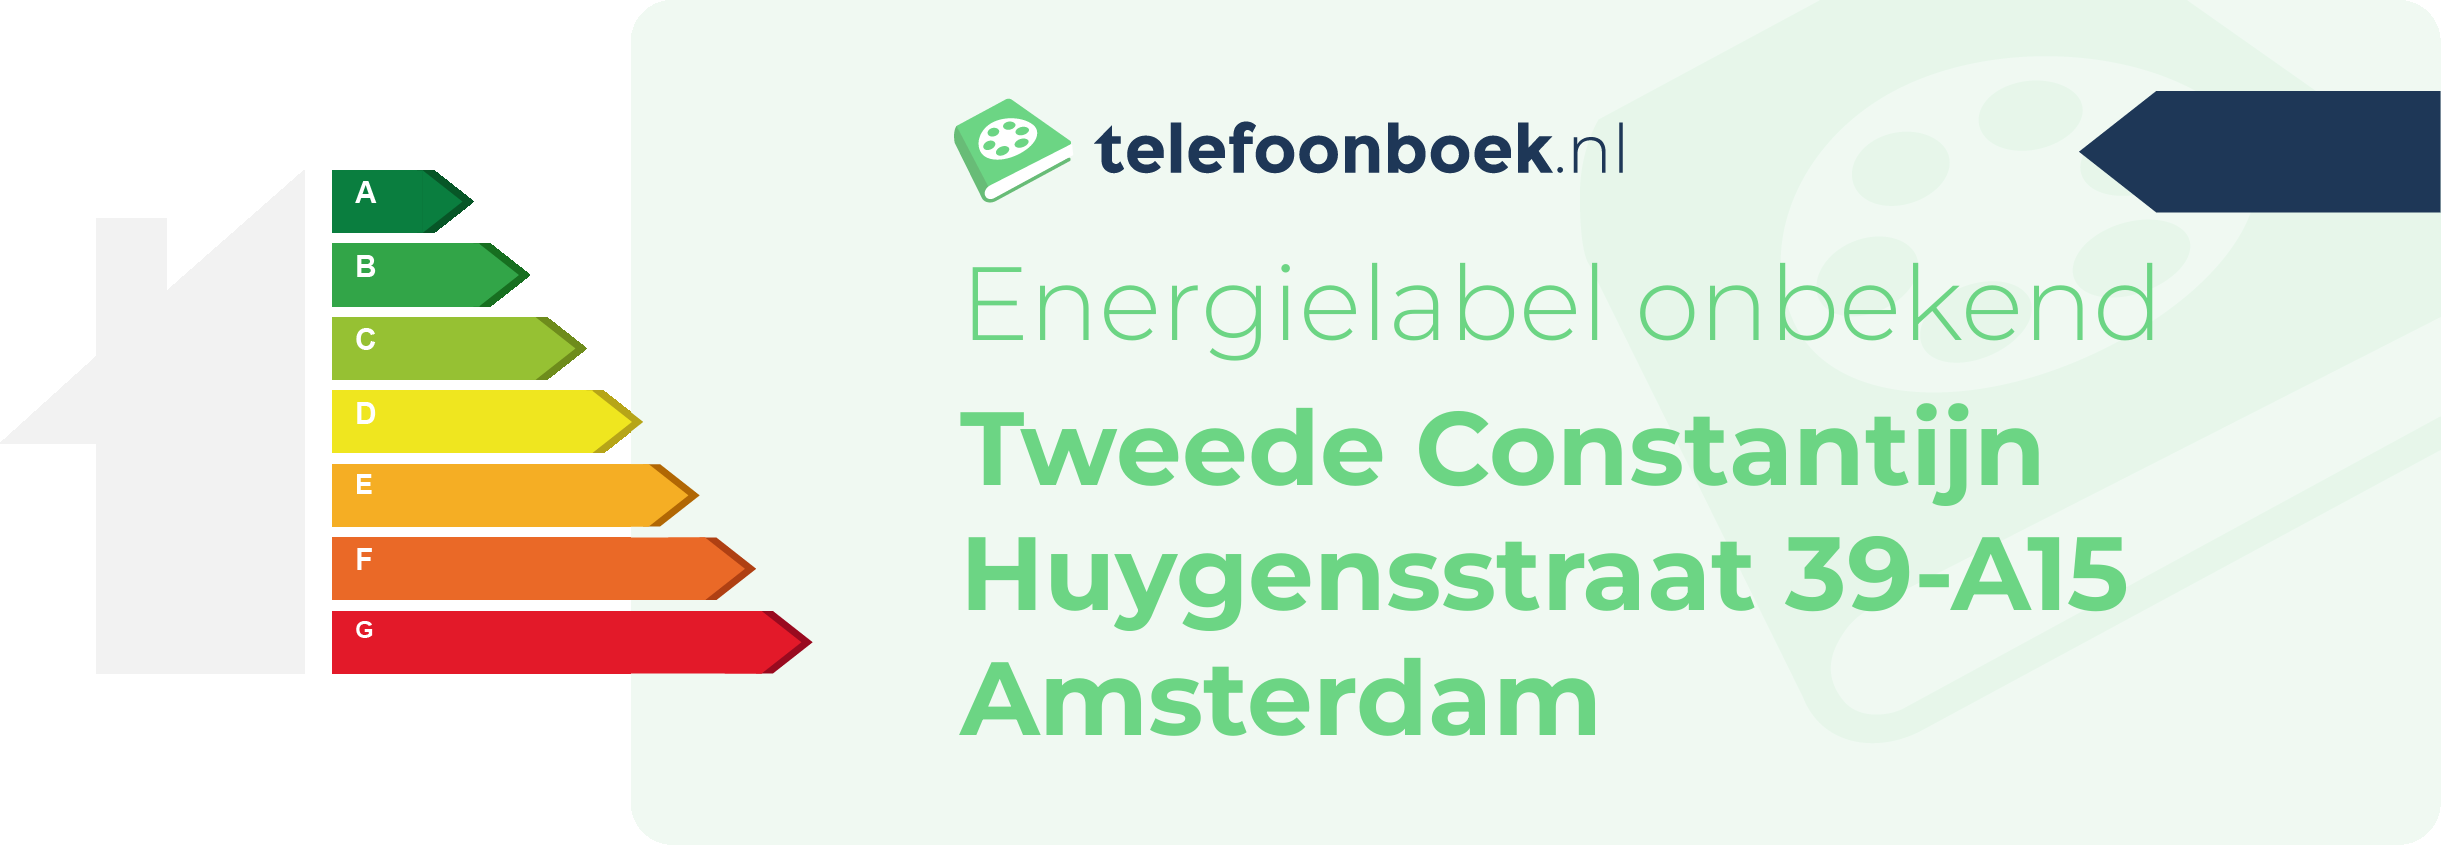 Energielabel Tweede Constantijn Huygensstraat 39-A15 Amsterdam